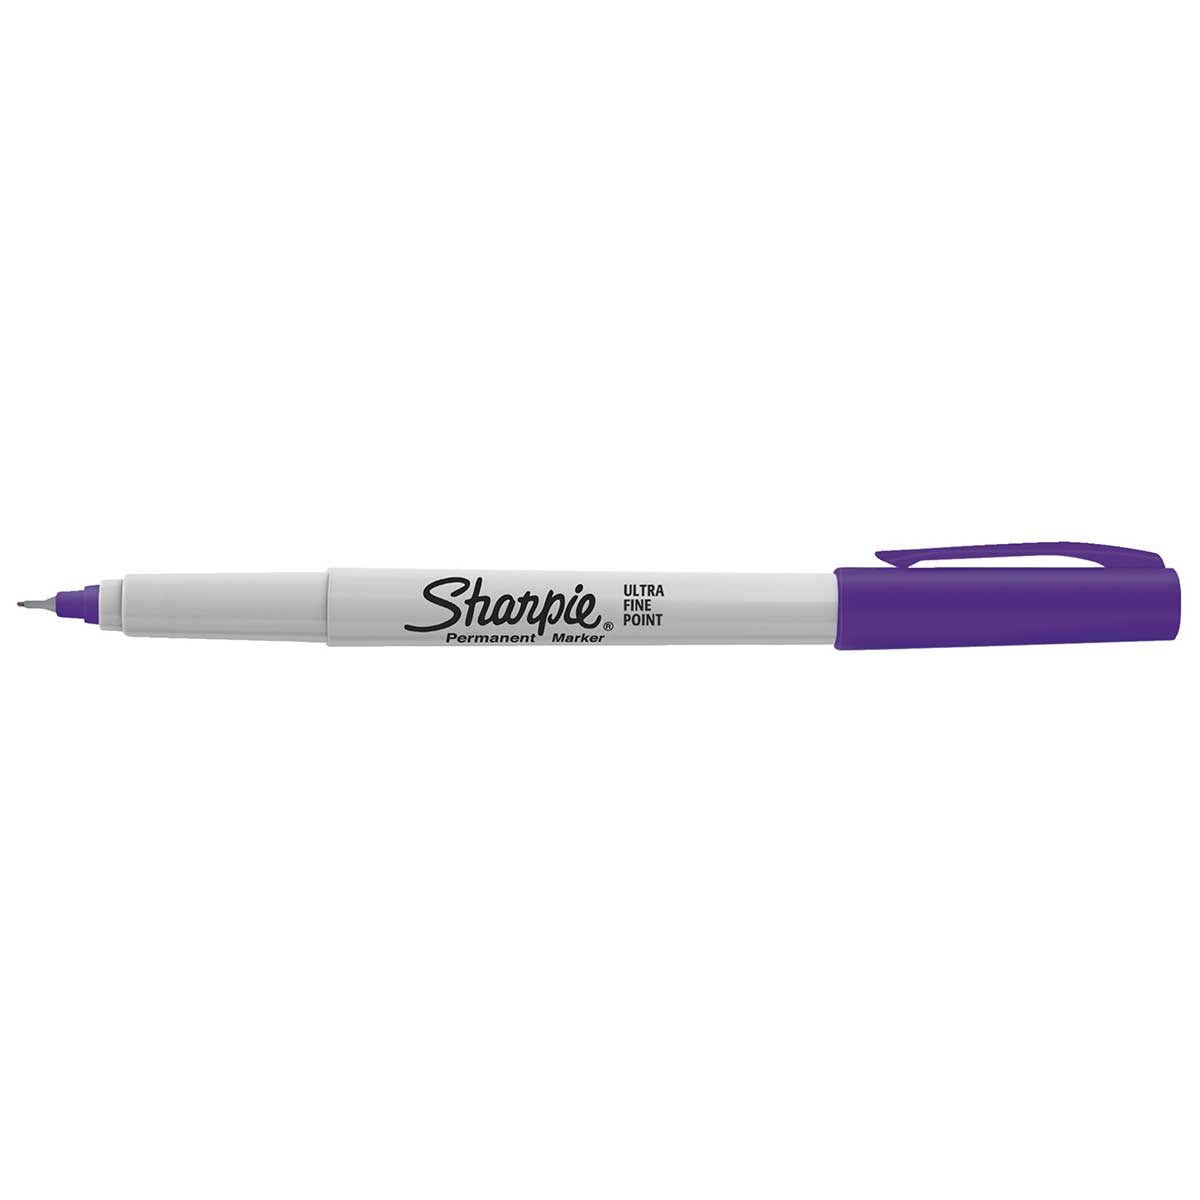 https://www.pensandpencils.net/cdn/shop/products/sharpie-purple-ultra-fine.jpg?v=1661115977